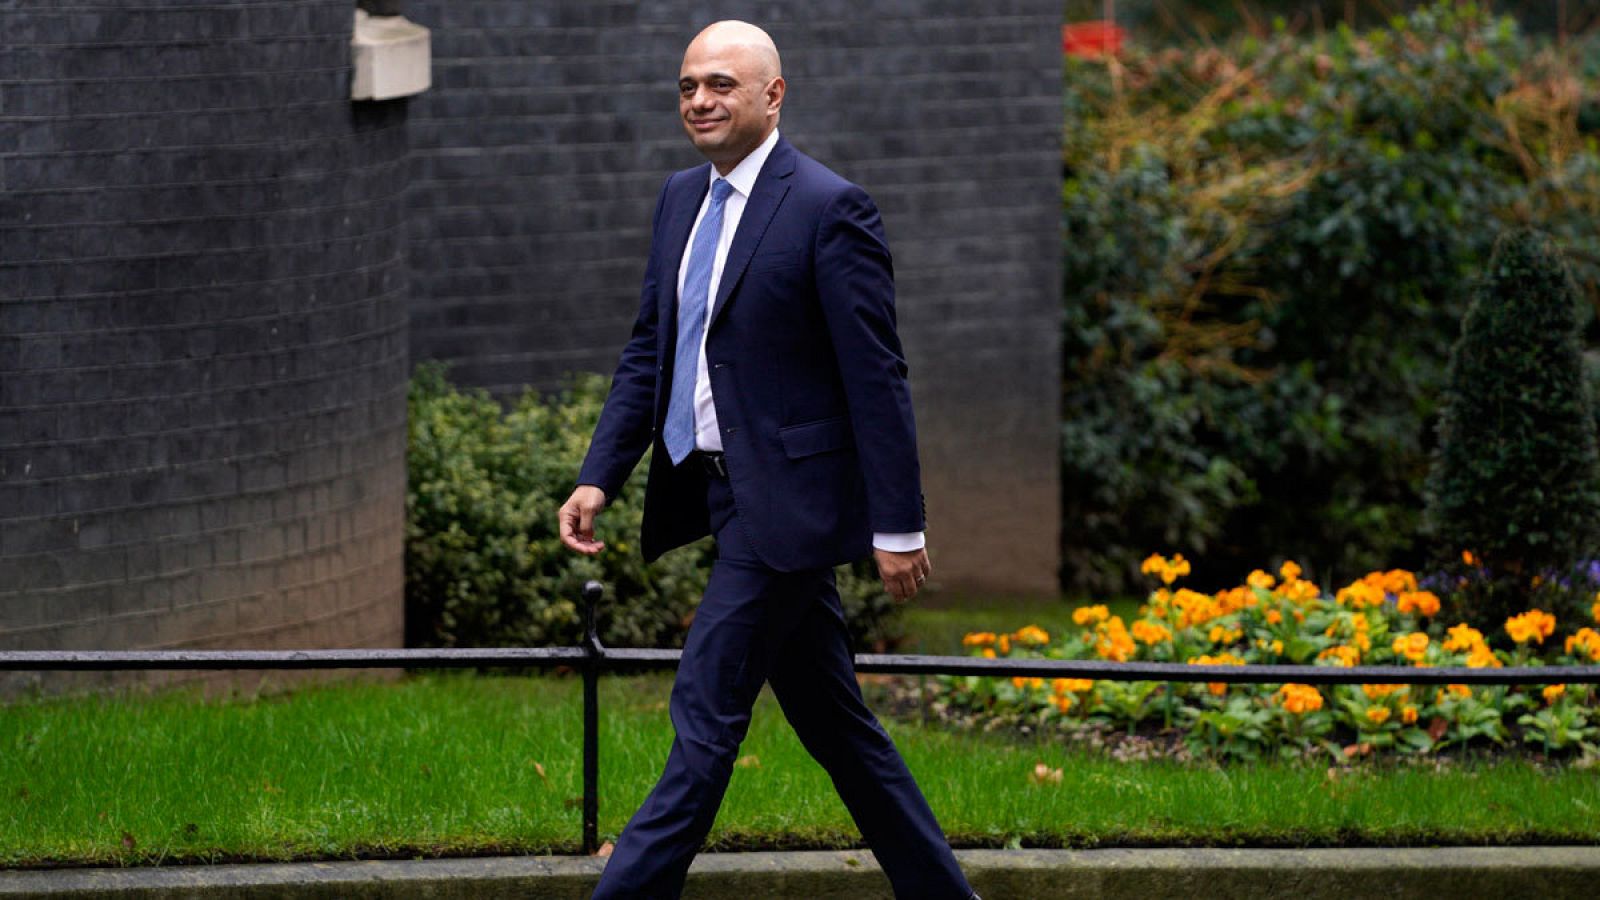  La salida del ministro de Finanzas marca la remodelación del Gobierno británico